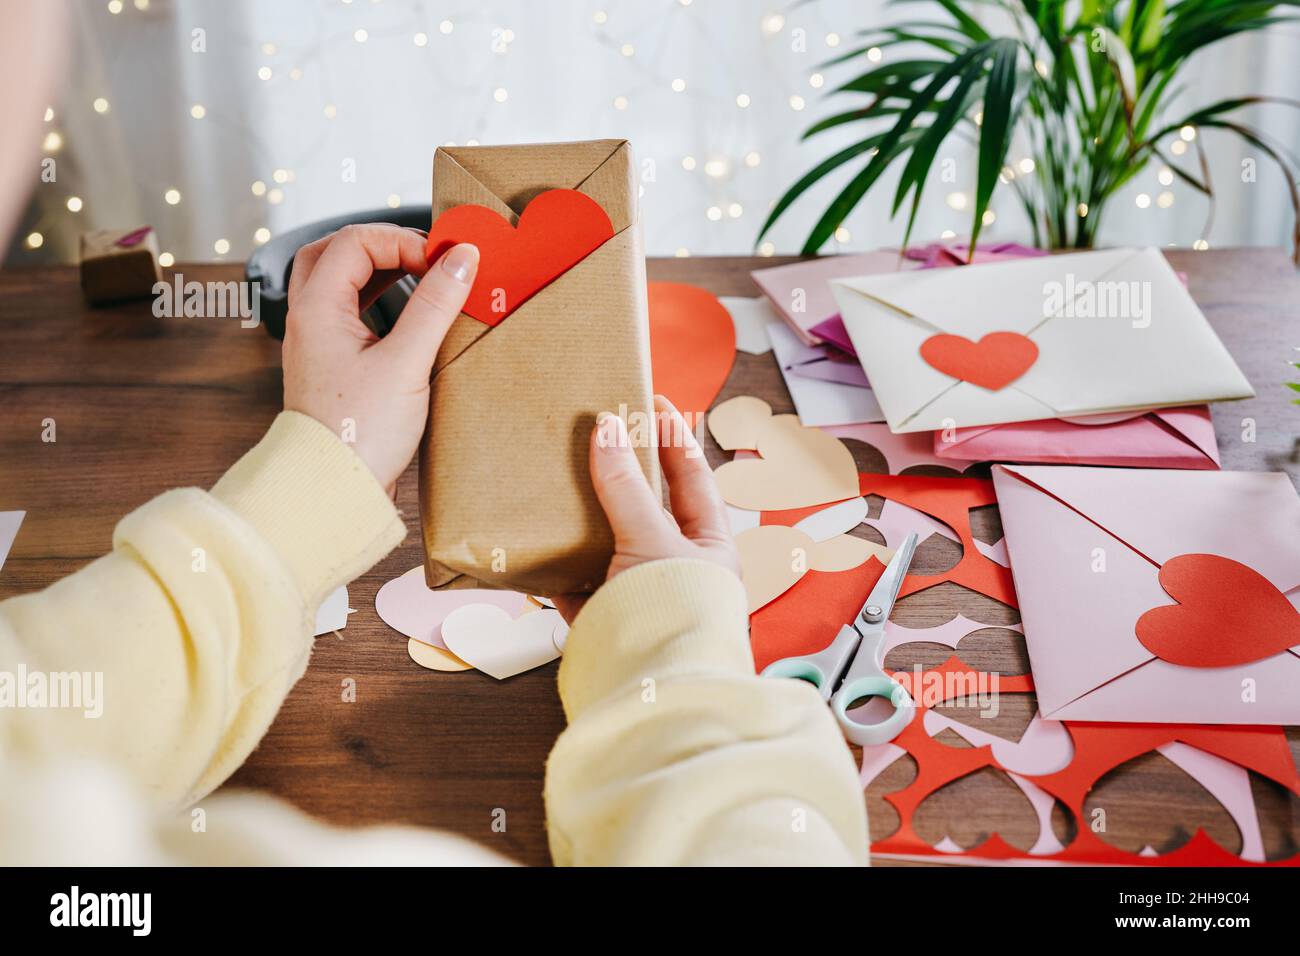 DIY Emballage Cadeau Pour La Saint-Valentin Cadeau De Papier D'emballage Et  Timbre De Pomme De Terre Sous Forme De Coeur Et Peint Image stock - Image  du cadeau, gosse: 134445151